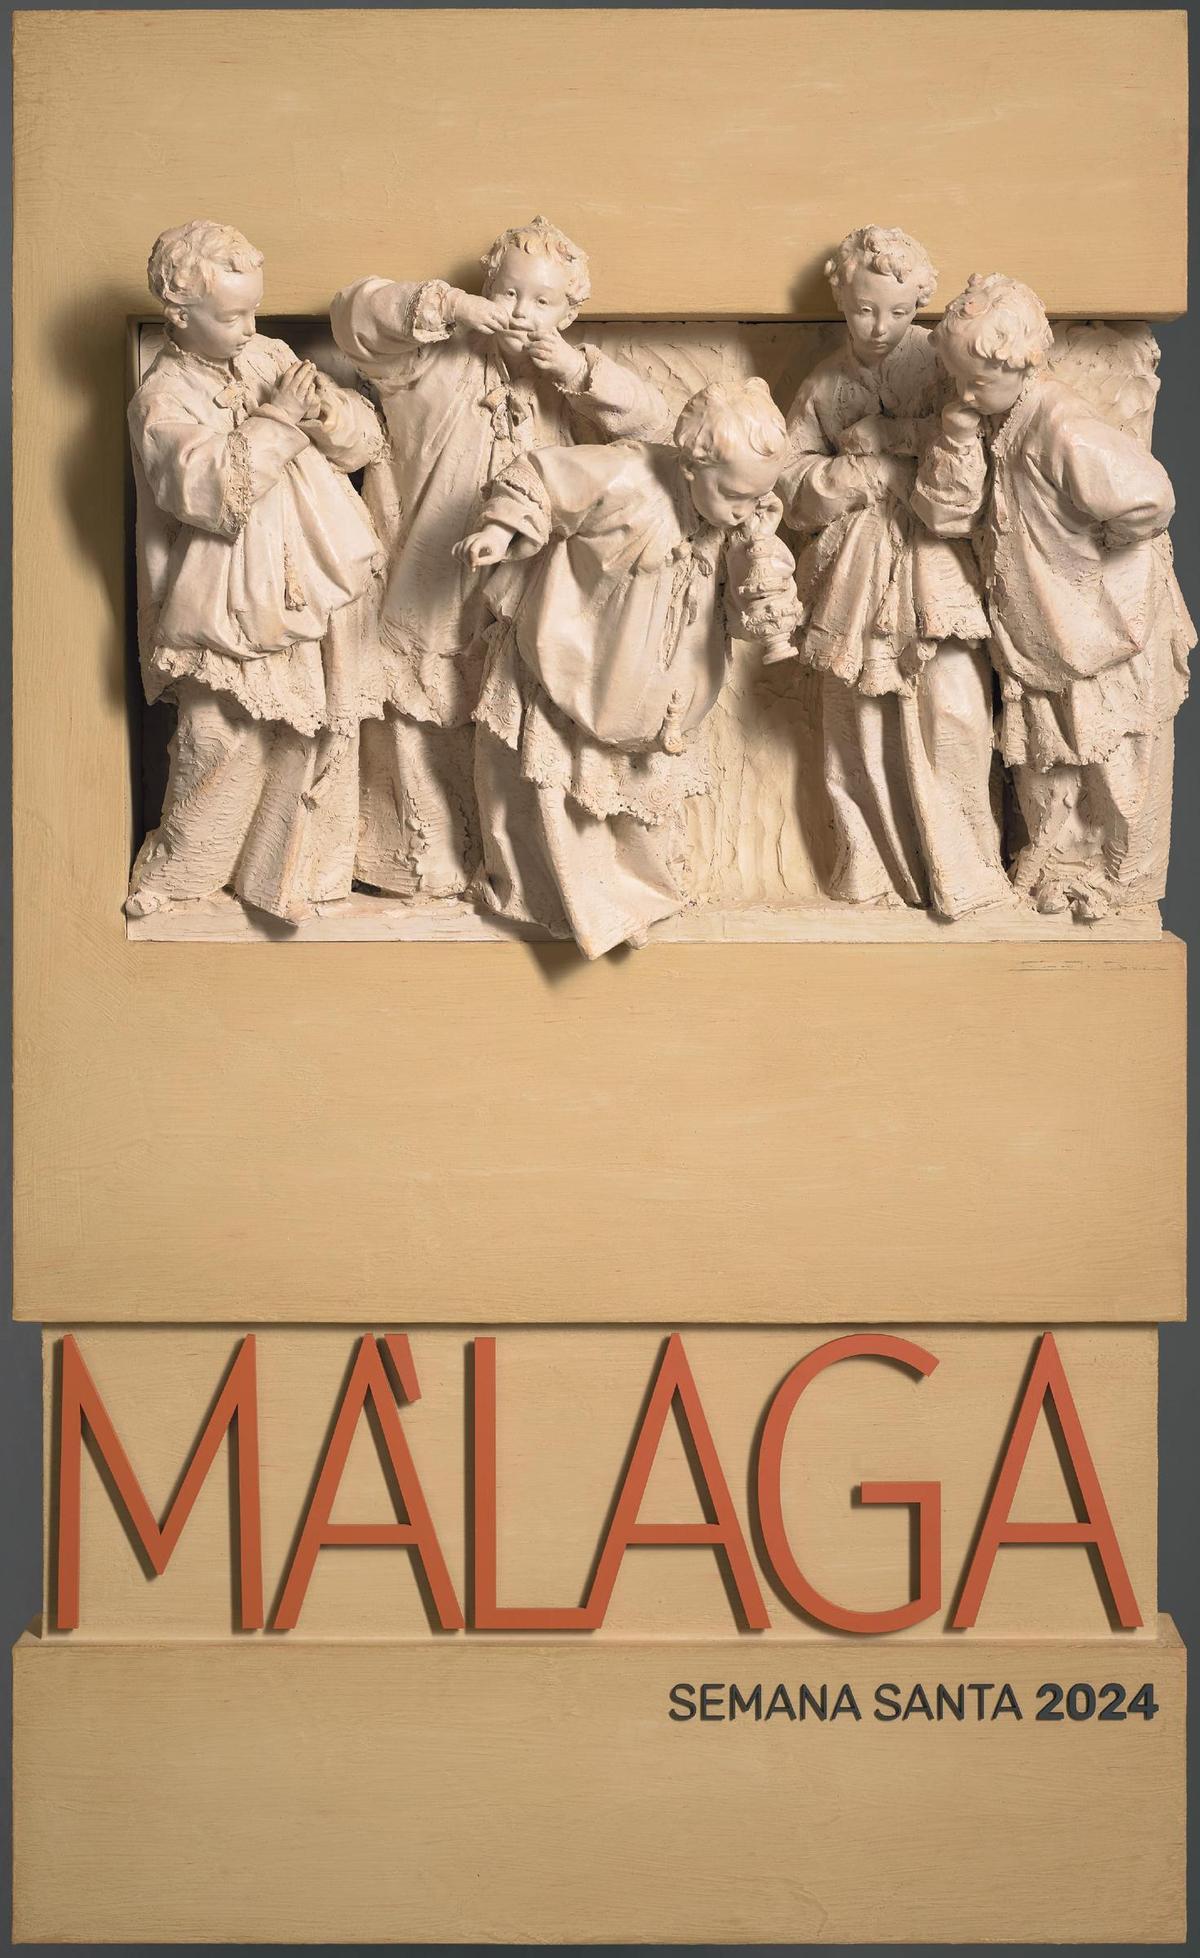 Cartel oficial de la Semana Santa de Málaga de 2024, obra del antequerano Ángel Sarmiento.